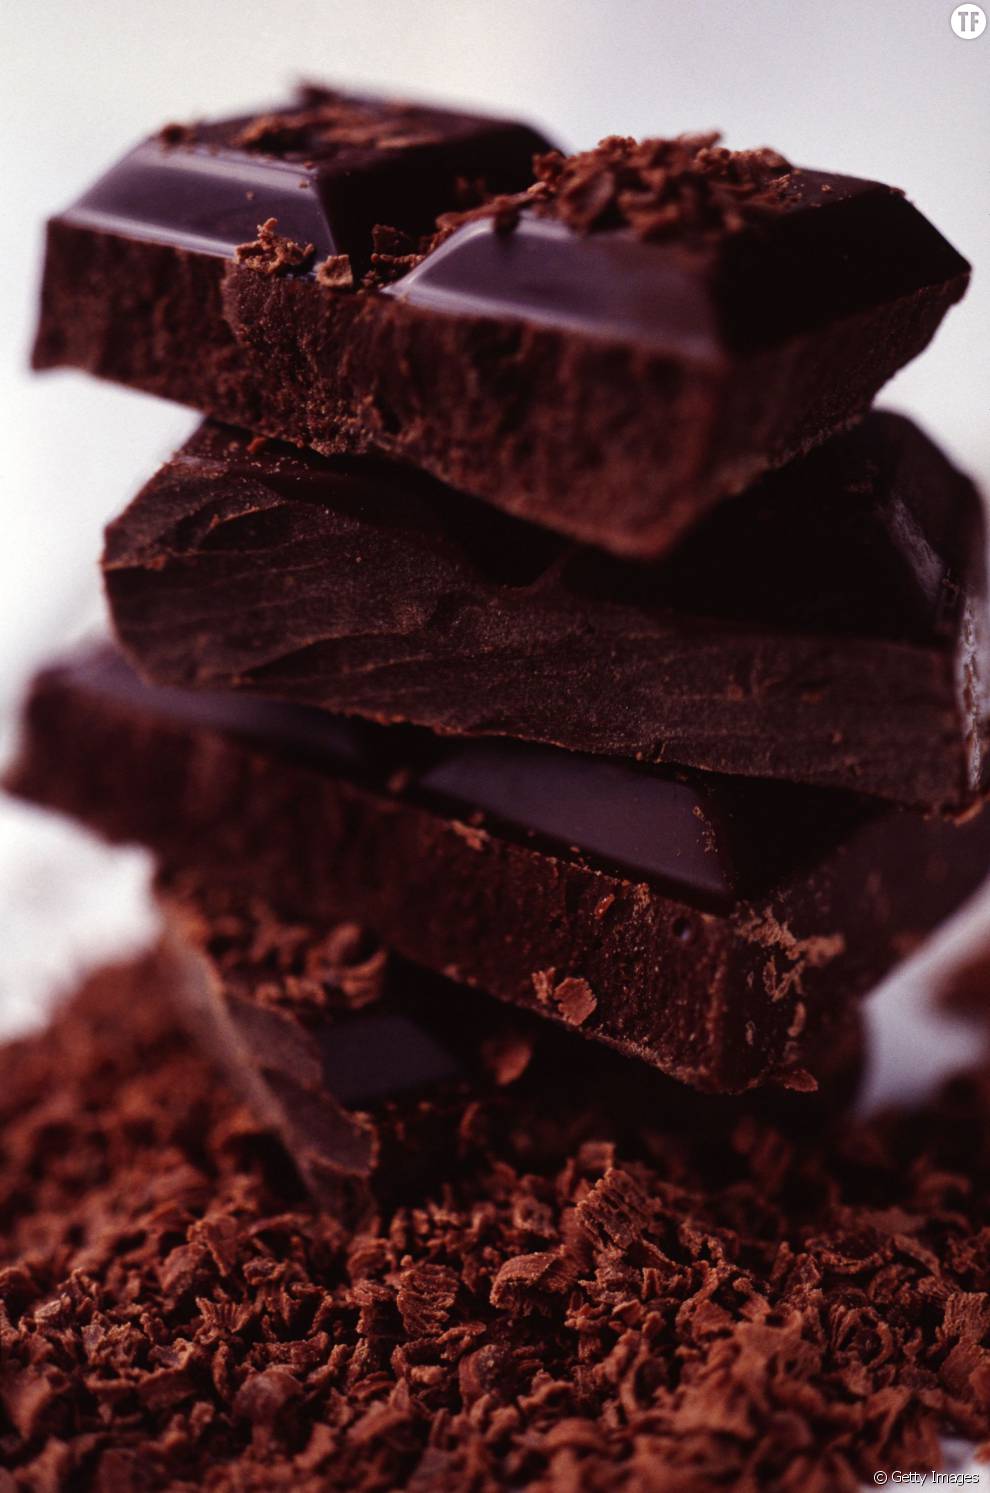 Manger du chocolat noir tous les jours aide à booster nos performances physiques en sport